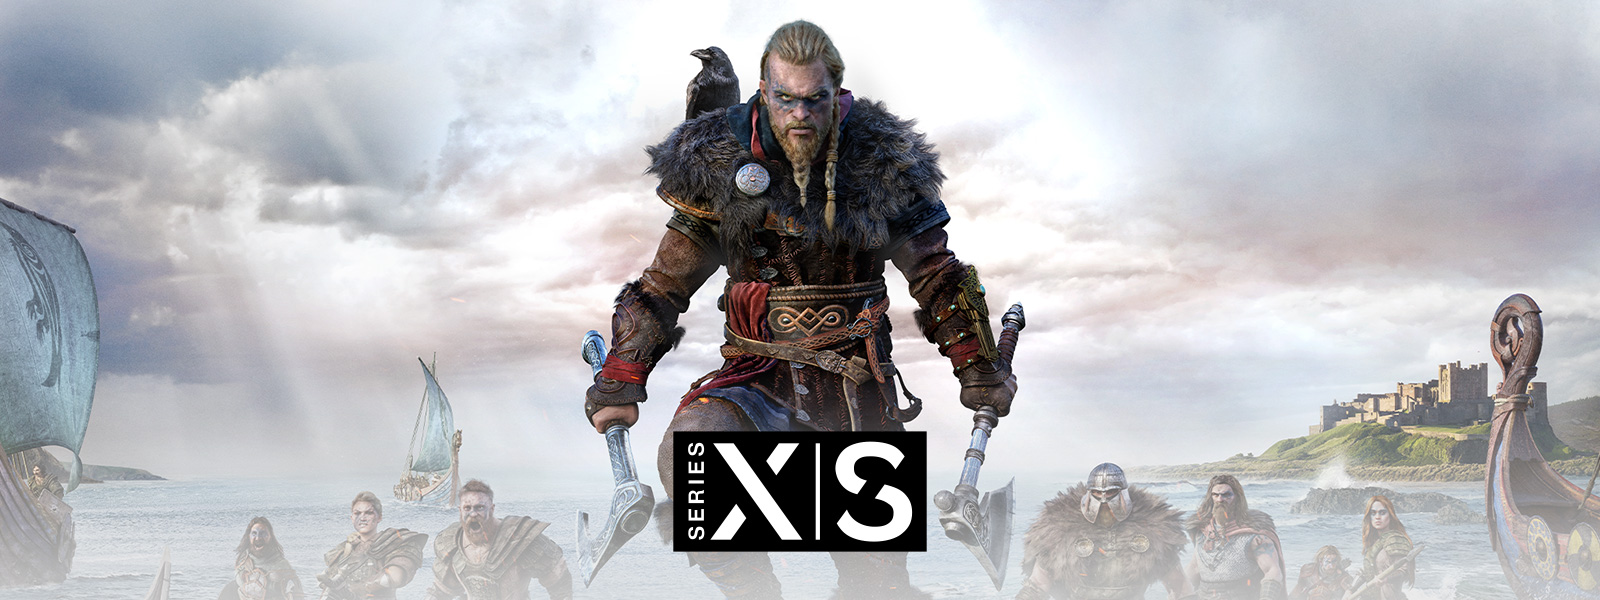 Assassin’s Creed Valhalla, Xbox Series X|S, el legendario vikingo Eivor lidera a su ejército en la batalla.